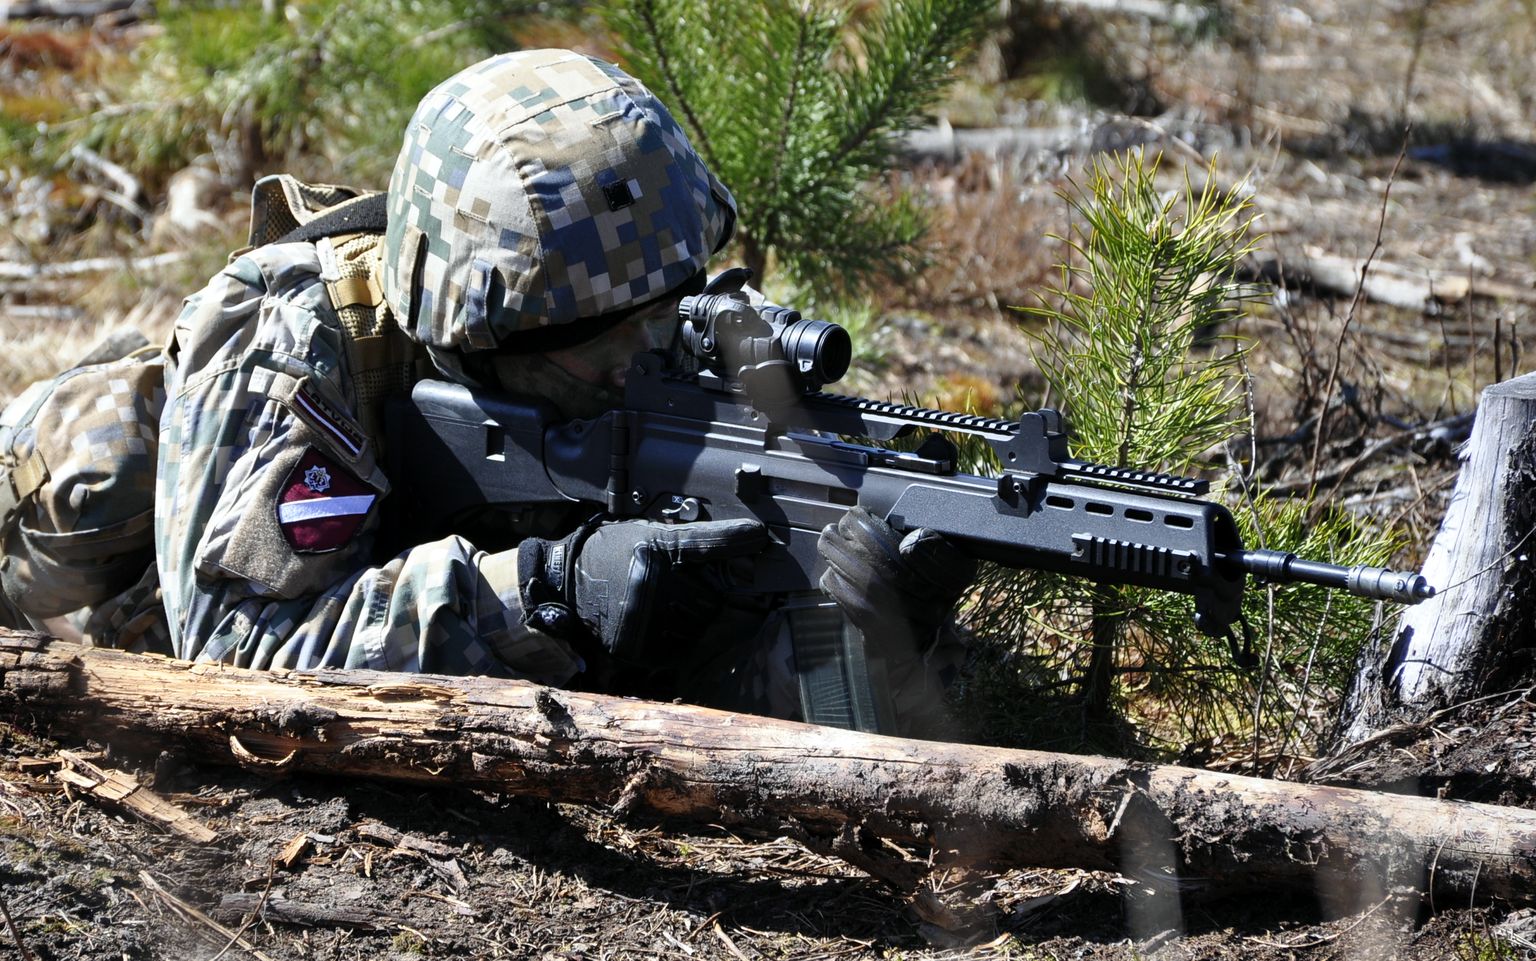 Латвийский солдат. Иллюстративное фото